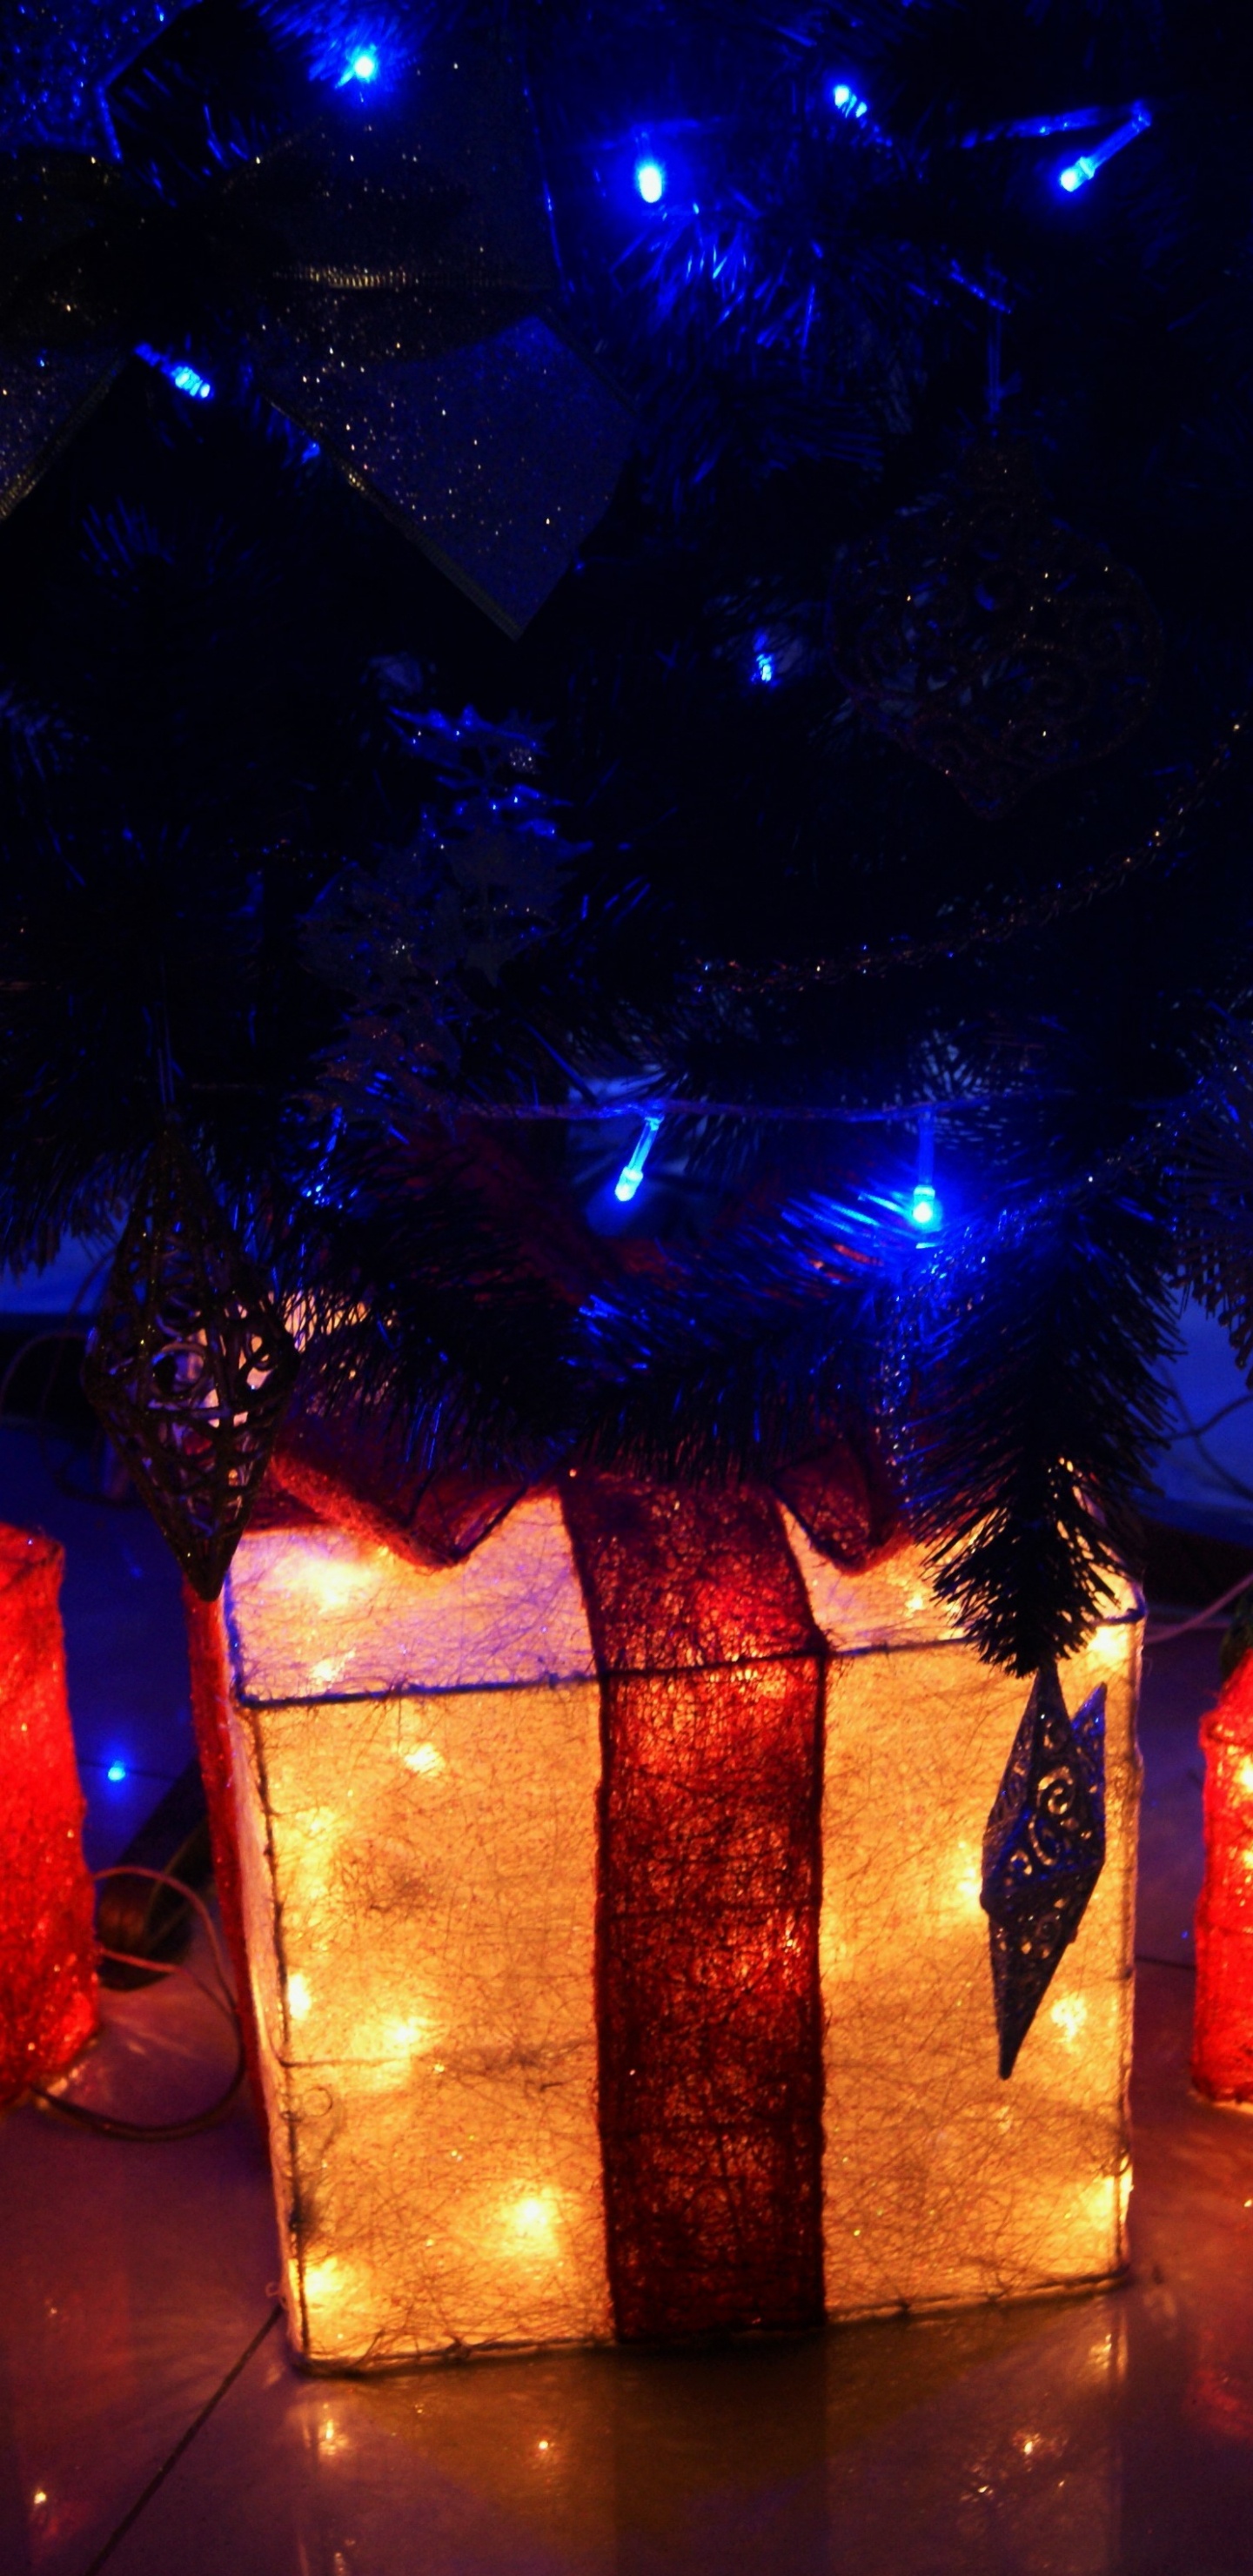 Licht, Weihnachtsbeleuchtung, Neujahr, Weihnachten, Neujahr Baum. Wallpaper in 1440x2960 Resolution